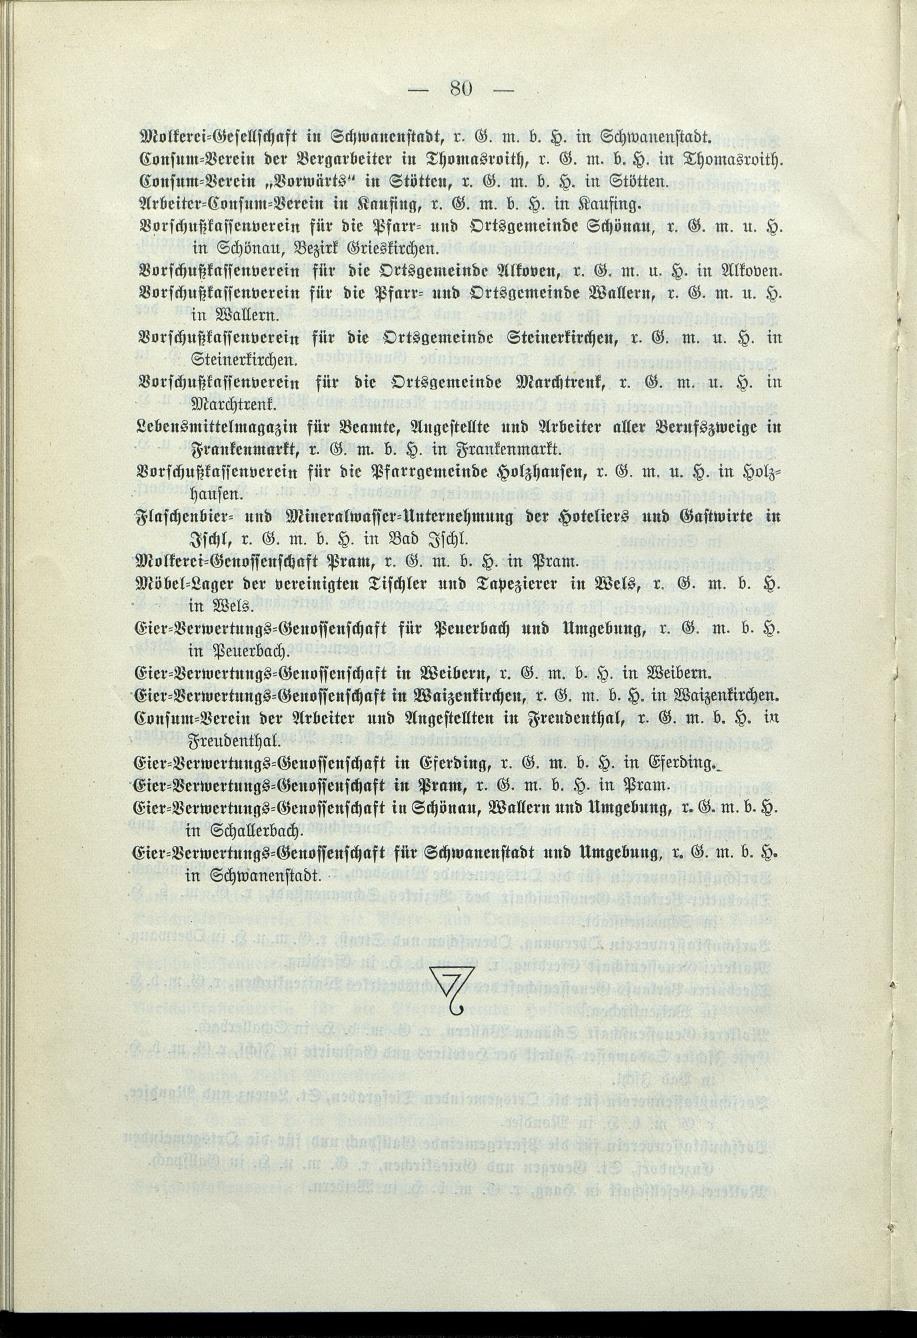 Verzeichnis der protokollierten Firmen und Genossenschaften in Oberösterreich 1908 - Seite 84